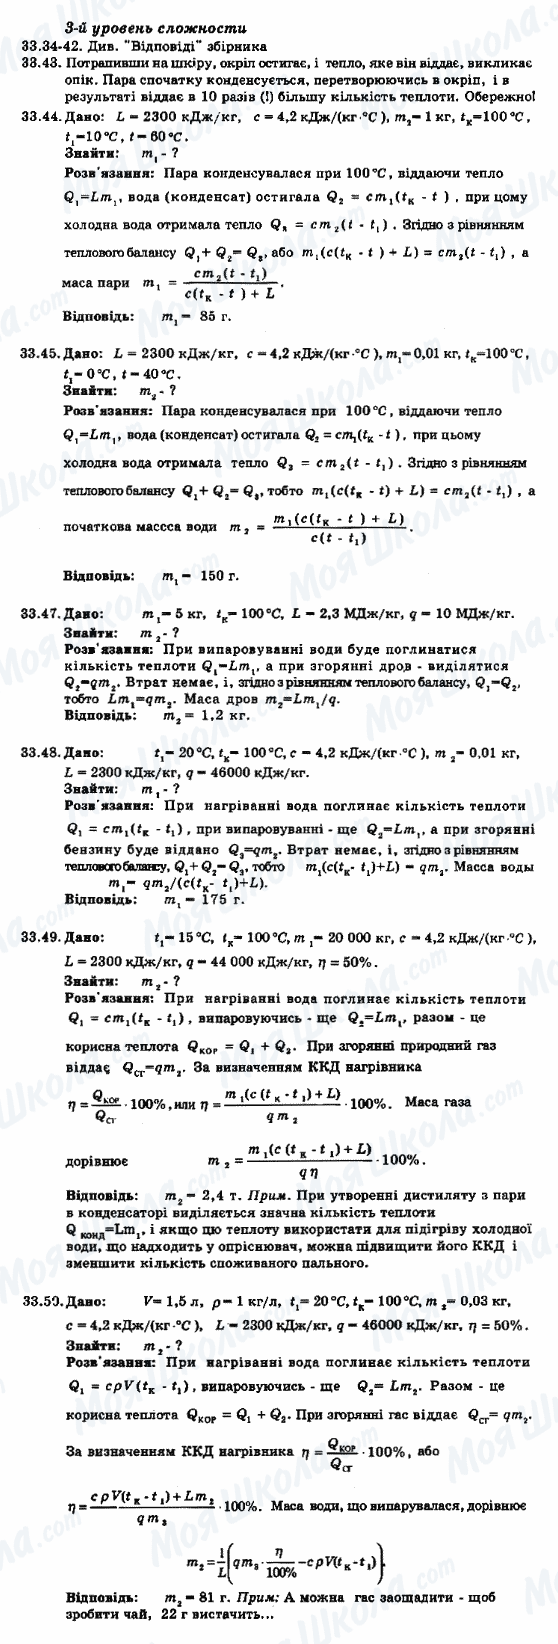 ГДЗ Фізика 8 клас сторінка 33.34-33.50